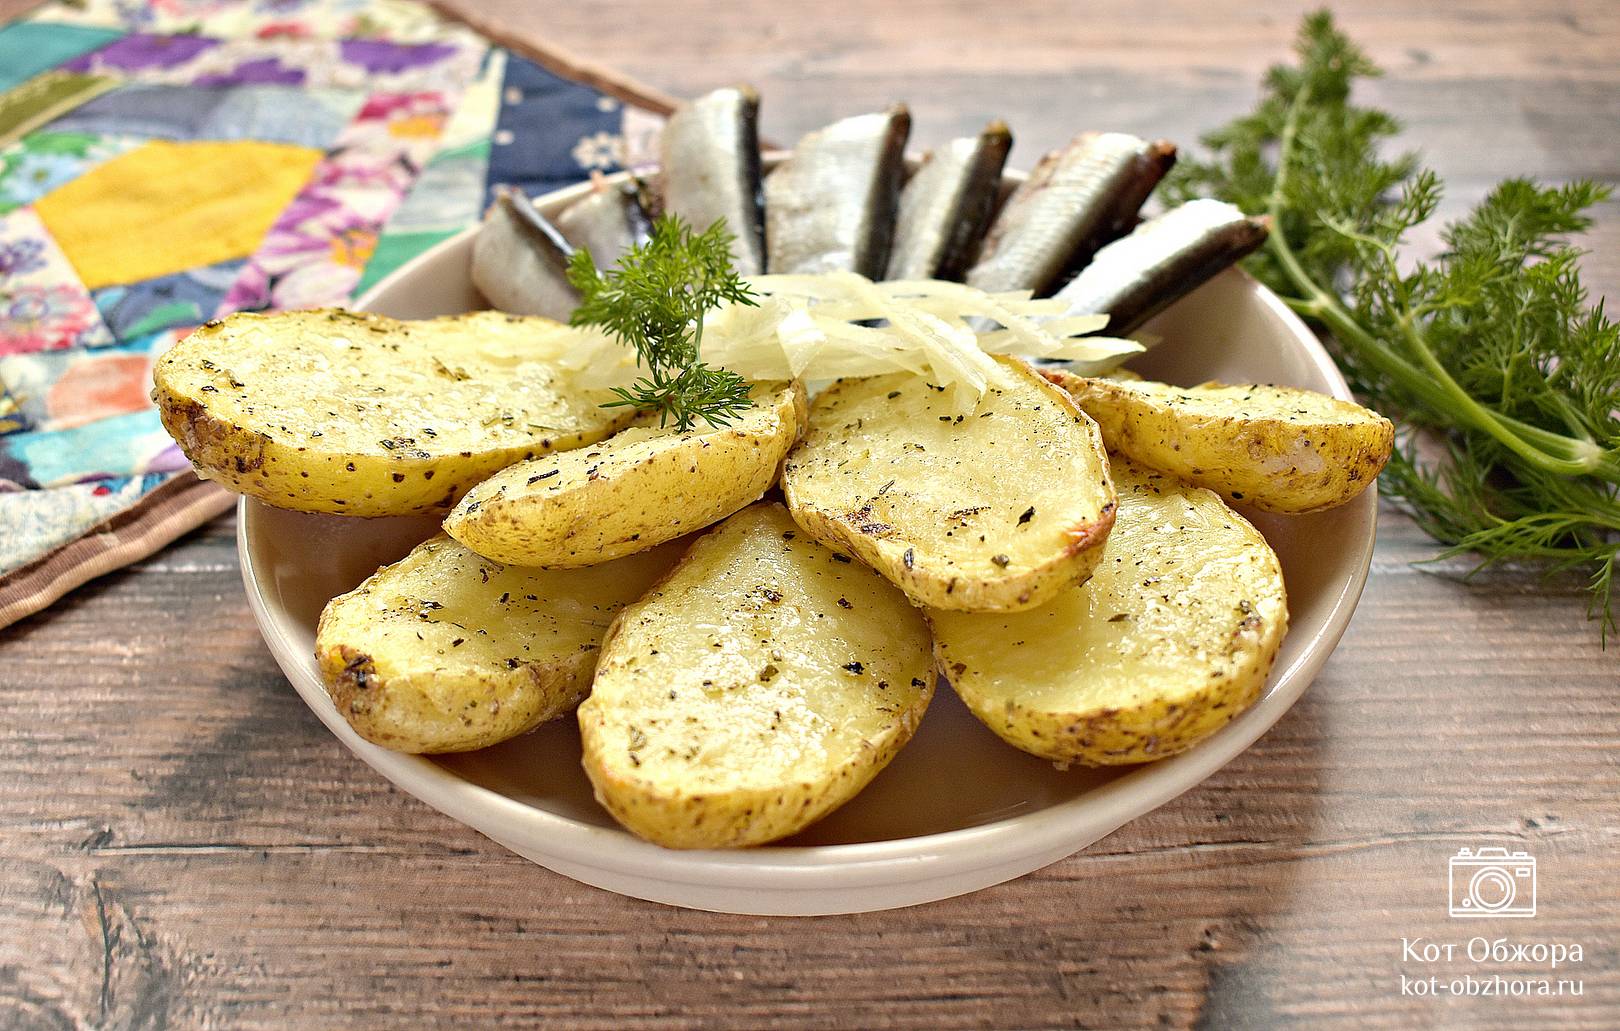 Картошка в микроволновке в пакете - пошаговый рецепт с фото на sunnyhair.ru